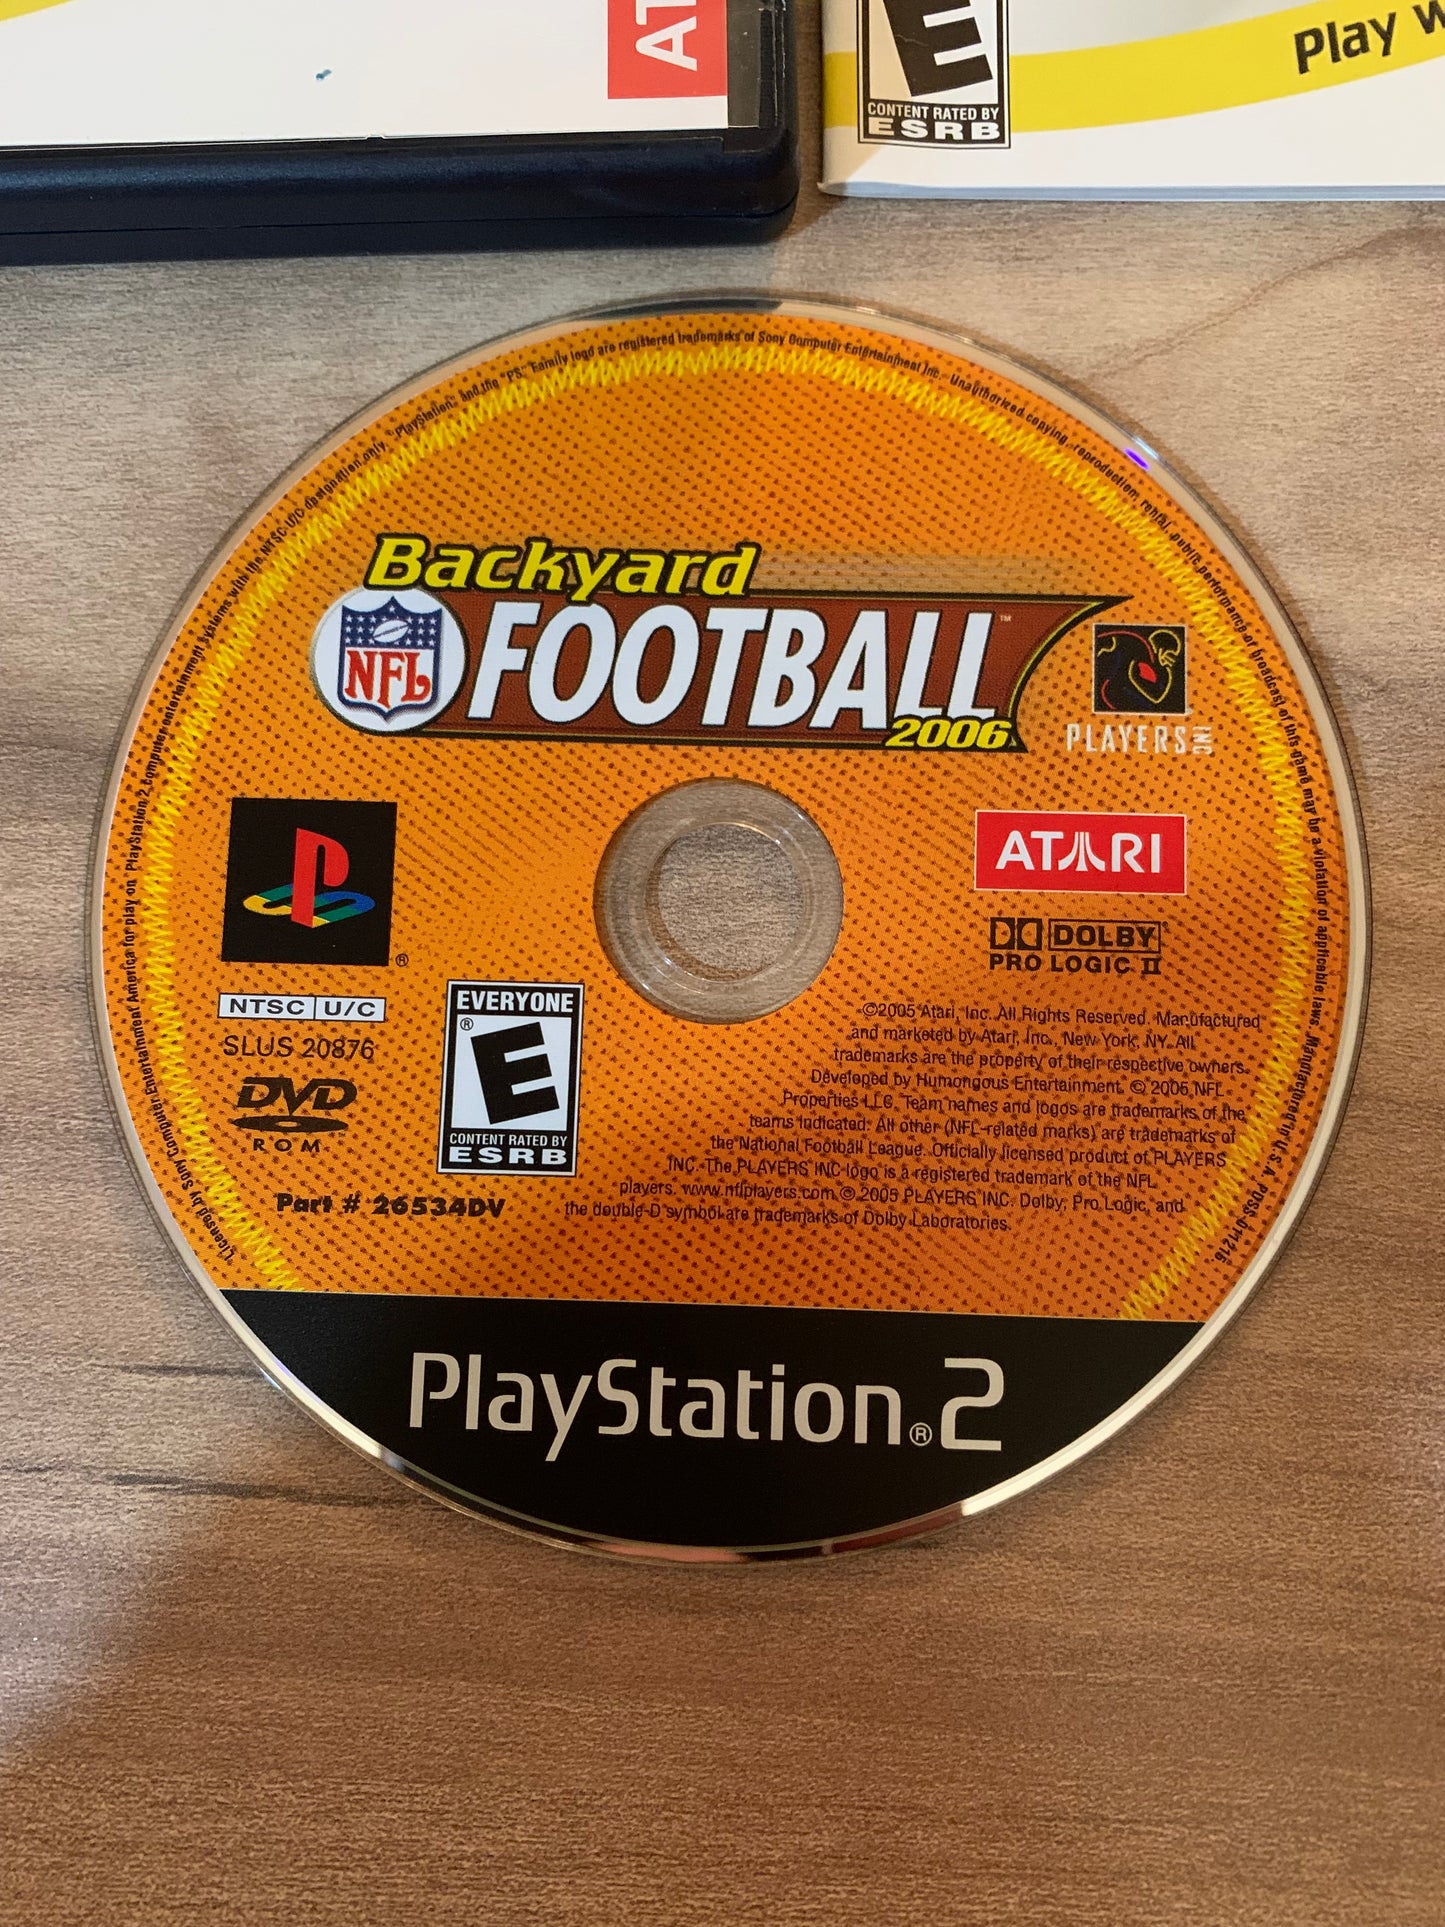 SONY PLAYSTATiON 2 [PS2] | BACKYARD NFL FOOTBALL 2006